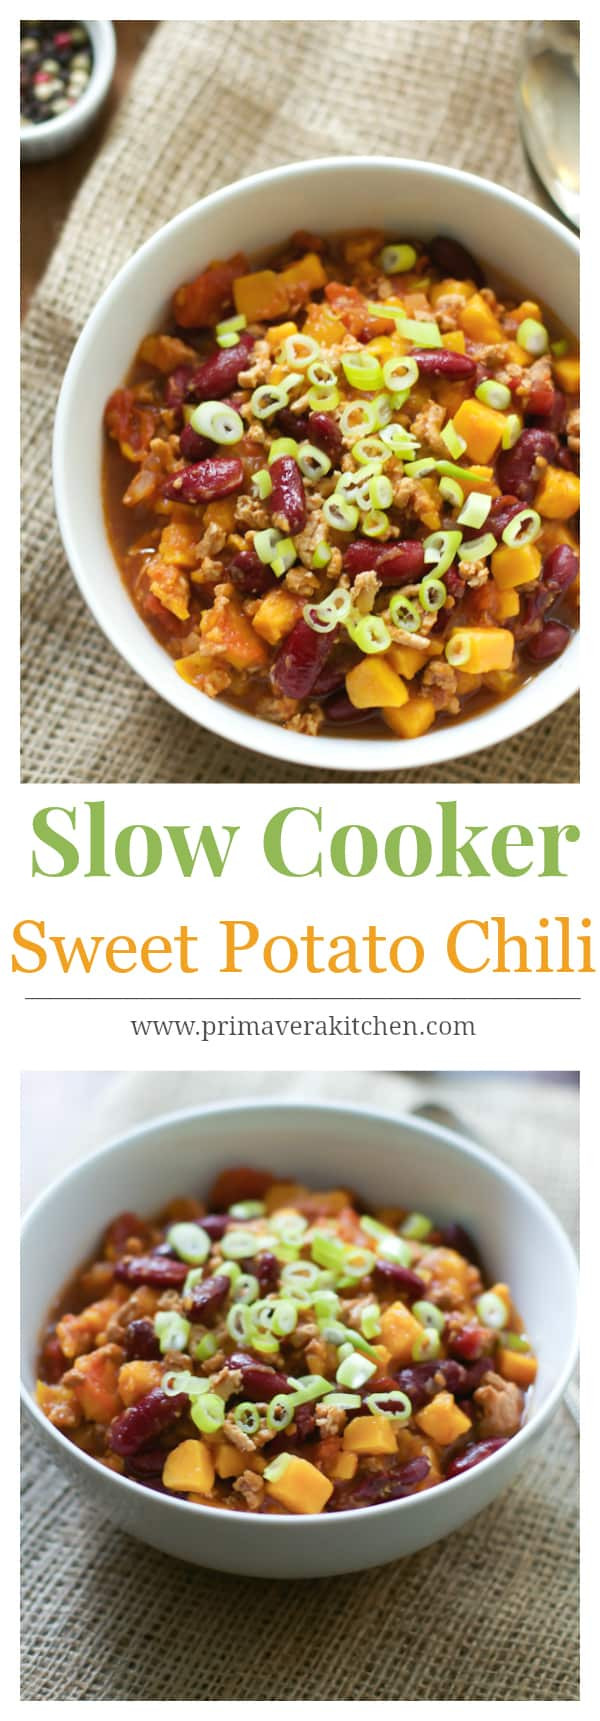 Sweet Potato Chili
 gwyneth paltrow turkey sweet potato chili